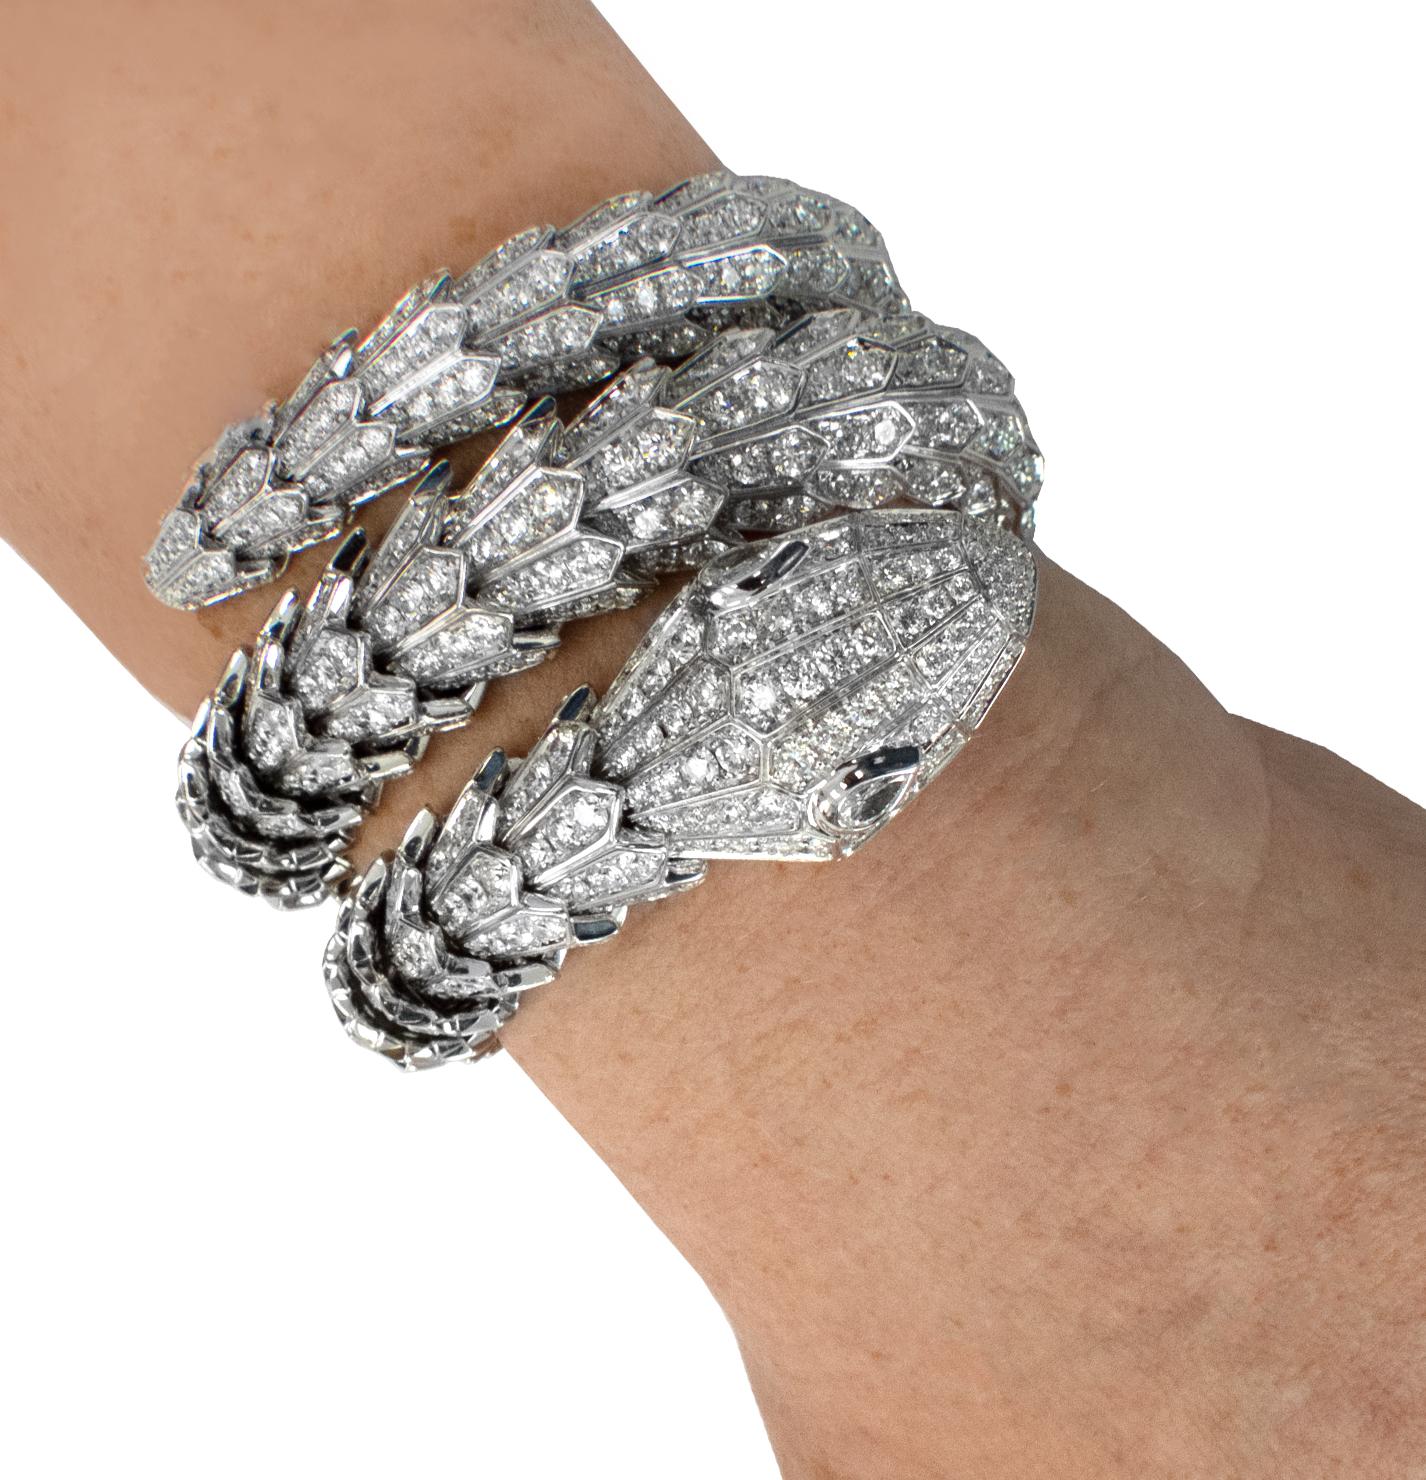 Des ateliers estimés de Bvlgari Italie émerge un chef-d'œuvre qui incarne la grandeur et la sophistication - le bracelet Serpenti Diamond Triple Wrap Bangle de Bvlgari. Méticuleusement réalisée en or blanc 18 carats, cette pièce exceptionnelle met